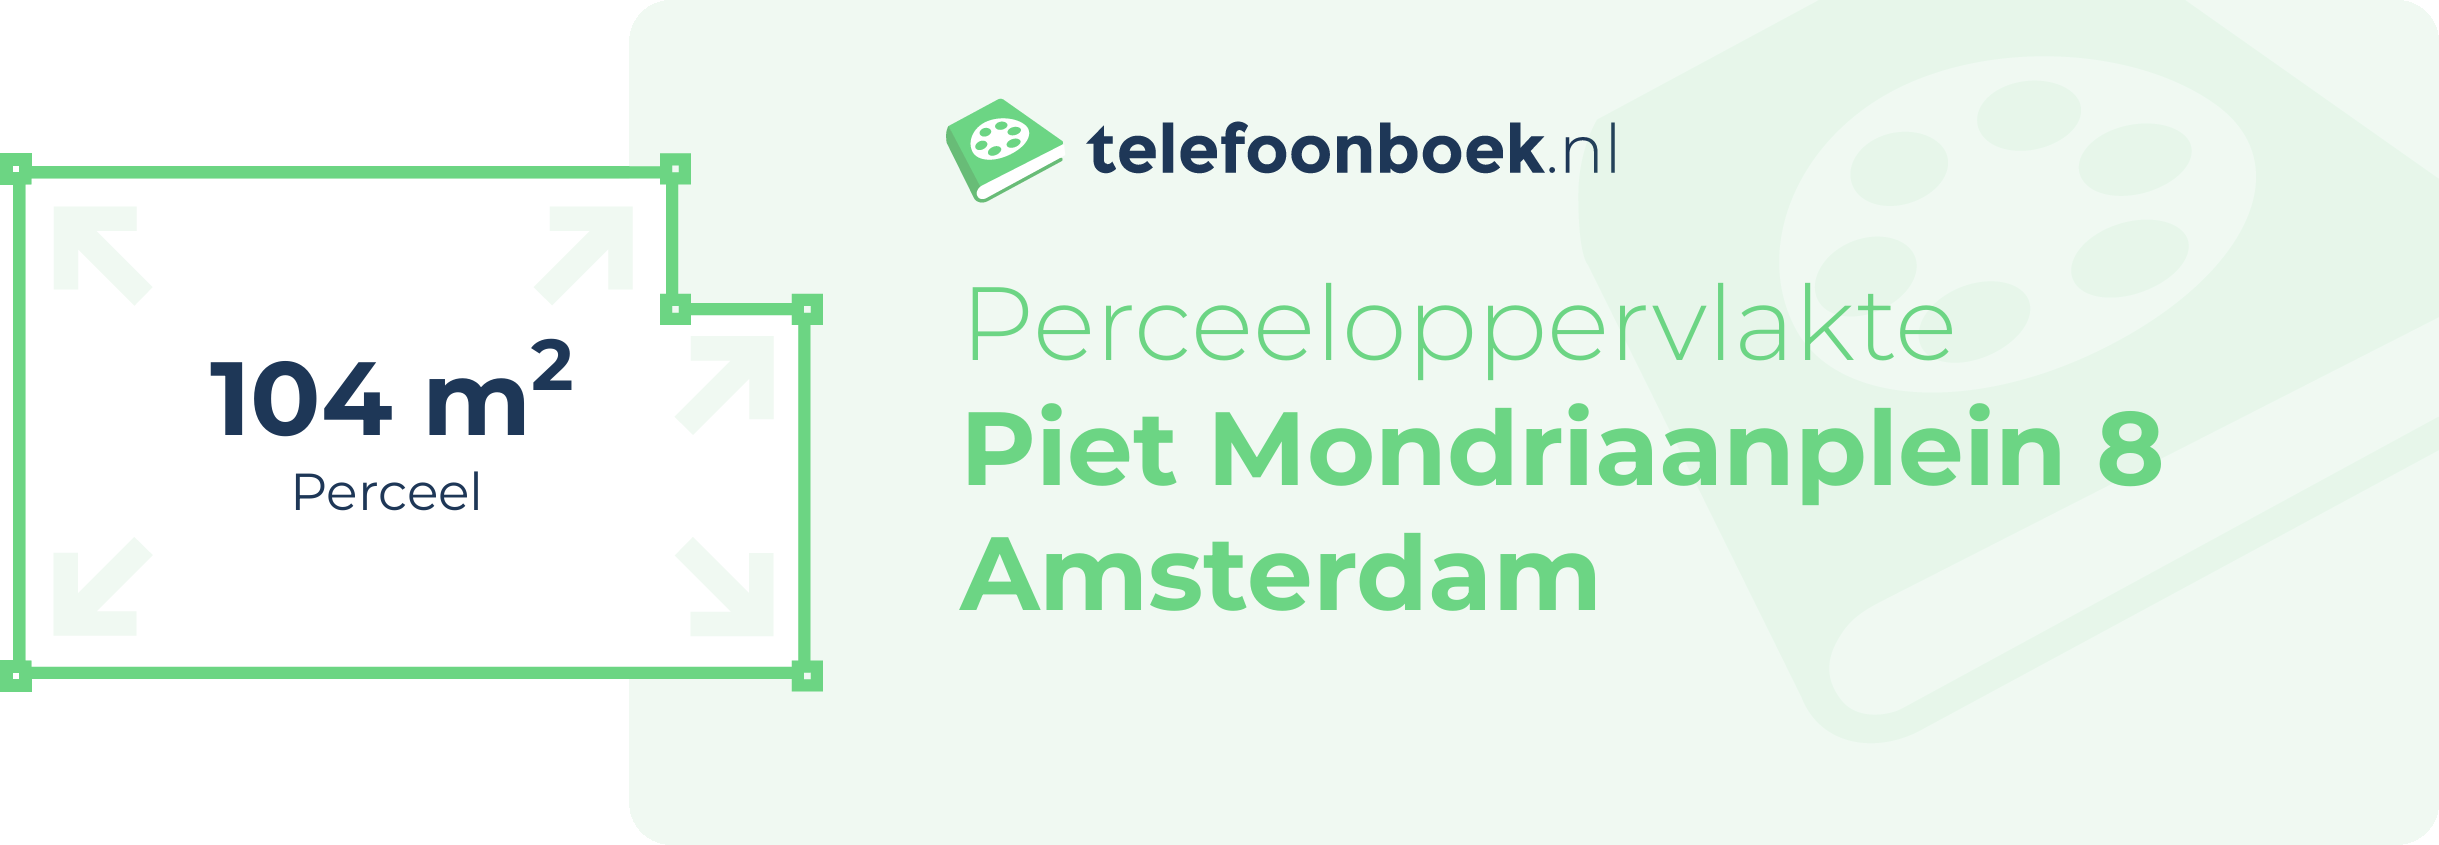 Perceeloppervlakte Piet Mondriaanplein 8 Amsterdam